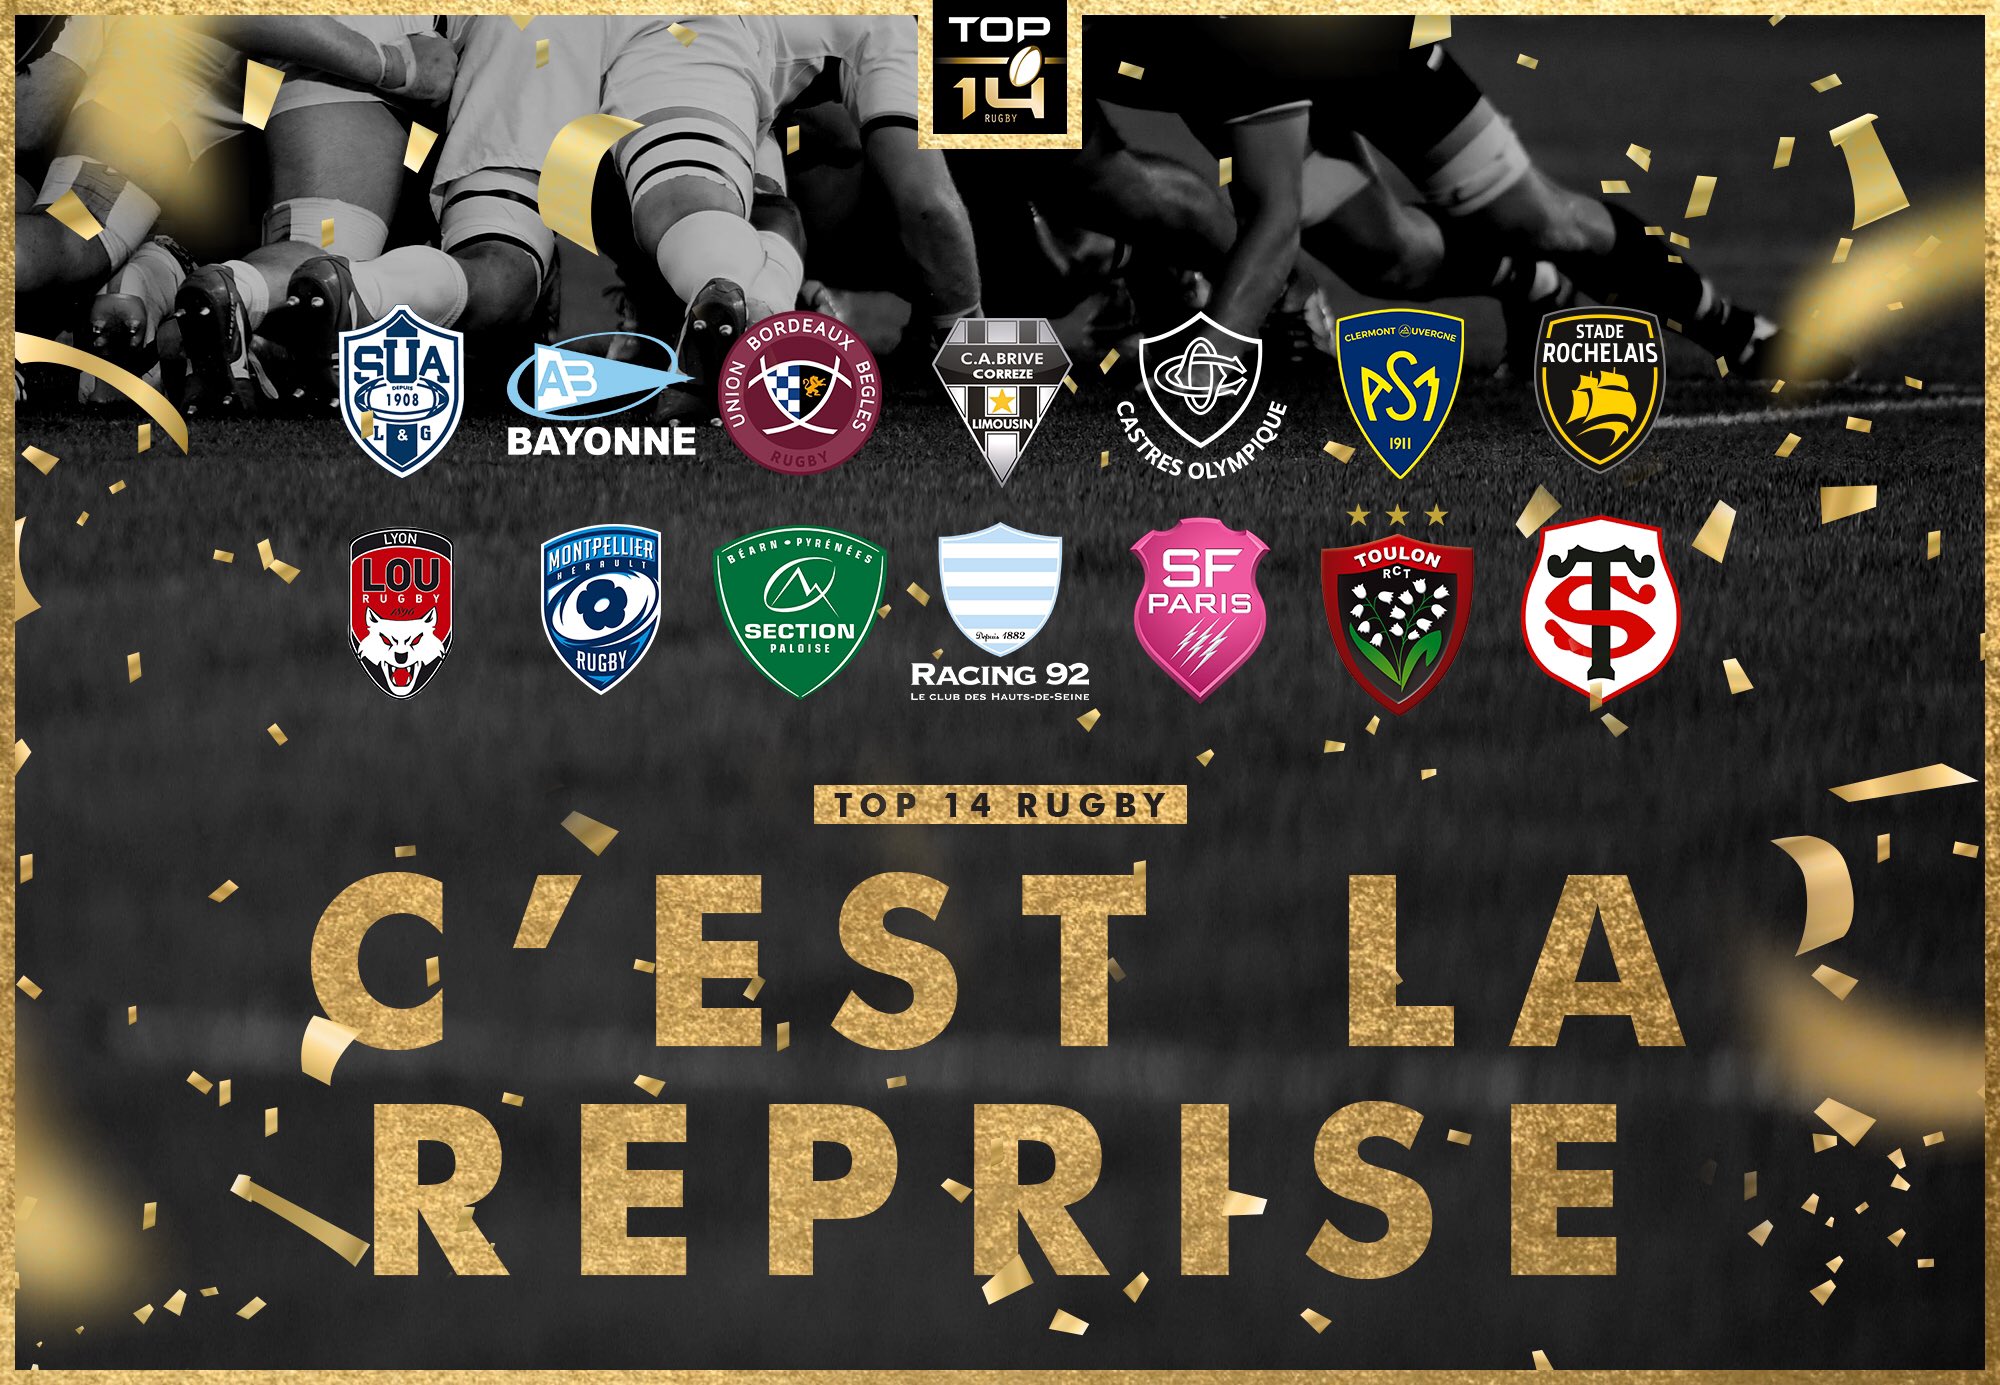 Top 14 Rugby On Twitter Top14 C Est La Reprise Quel Est Votre Favori Pour Cette Saison 2019 2020